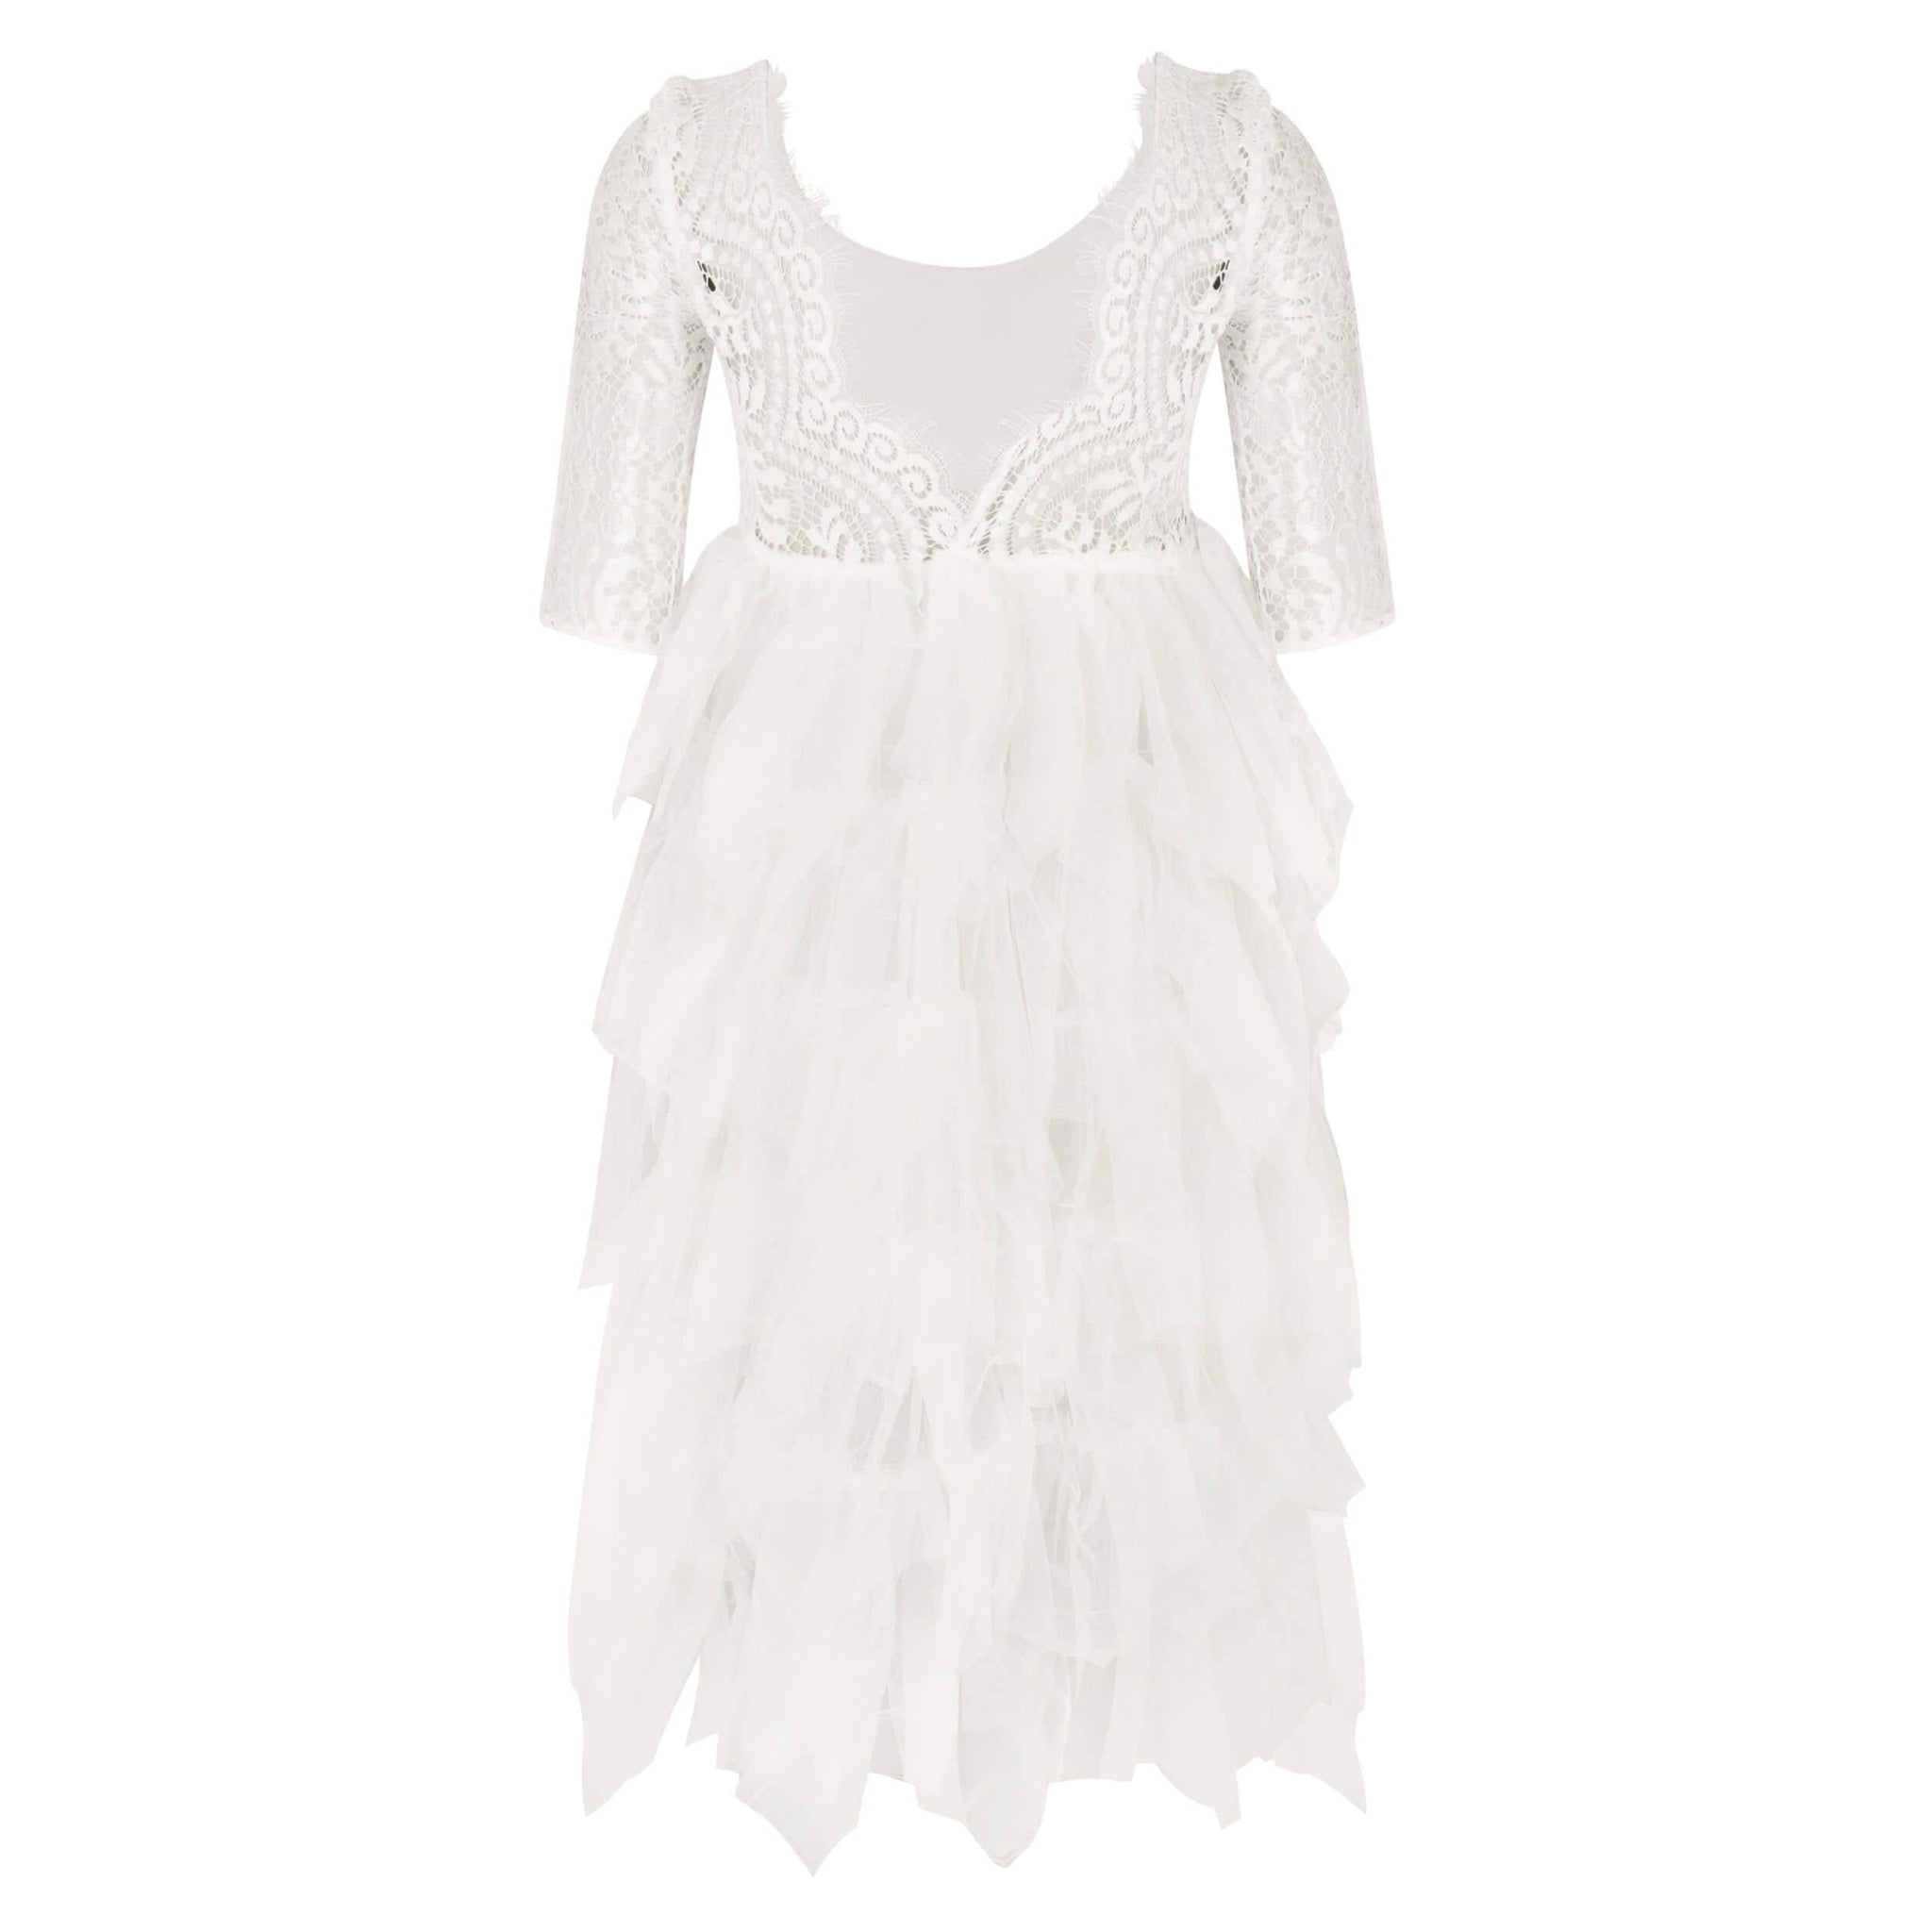 Bohemian Spirit Dress - Ice White - UK Flower Girl Boutique